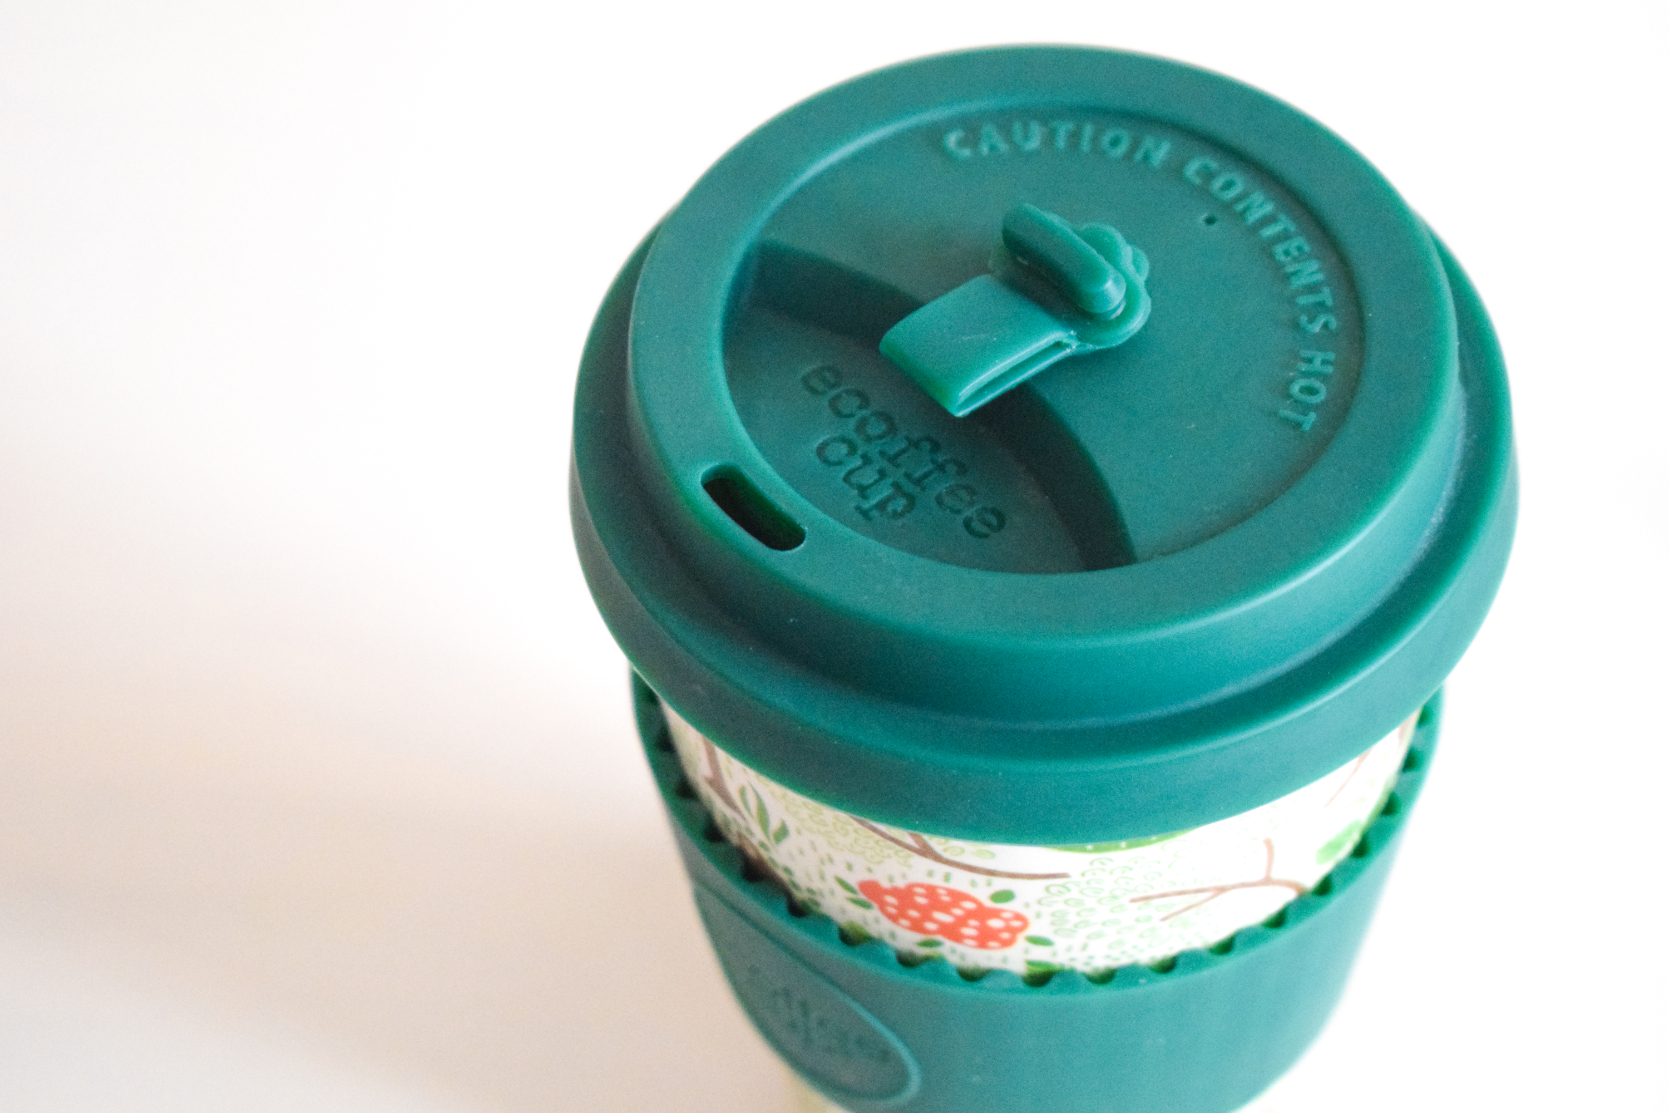 【自由テーマ】世界初、オランウータンを守るオリジナルエコーヒーカップ